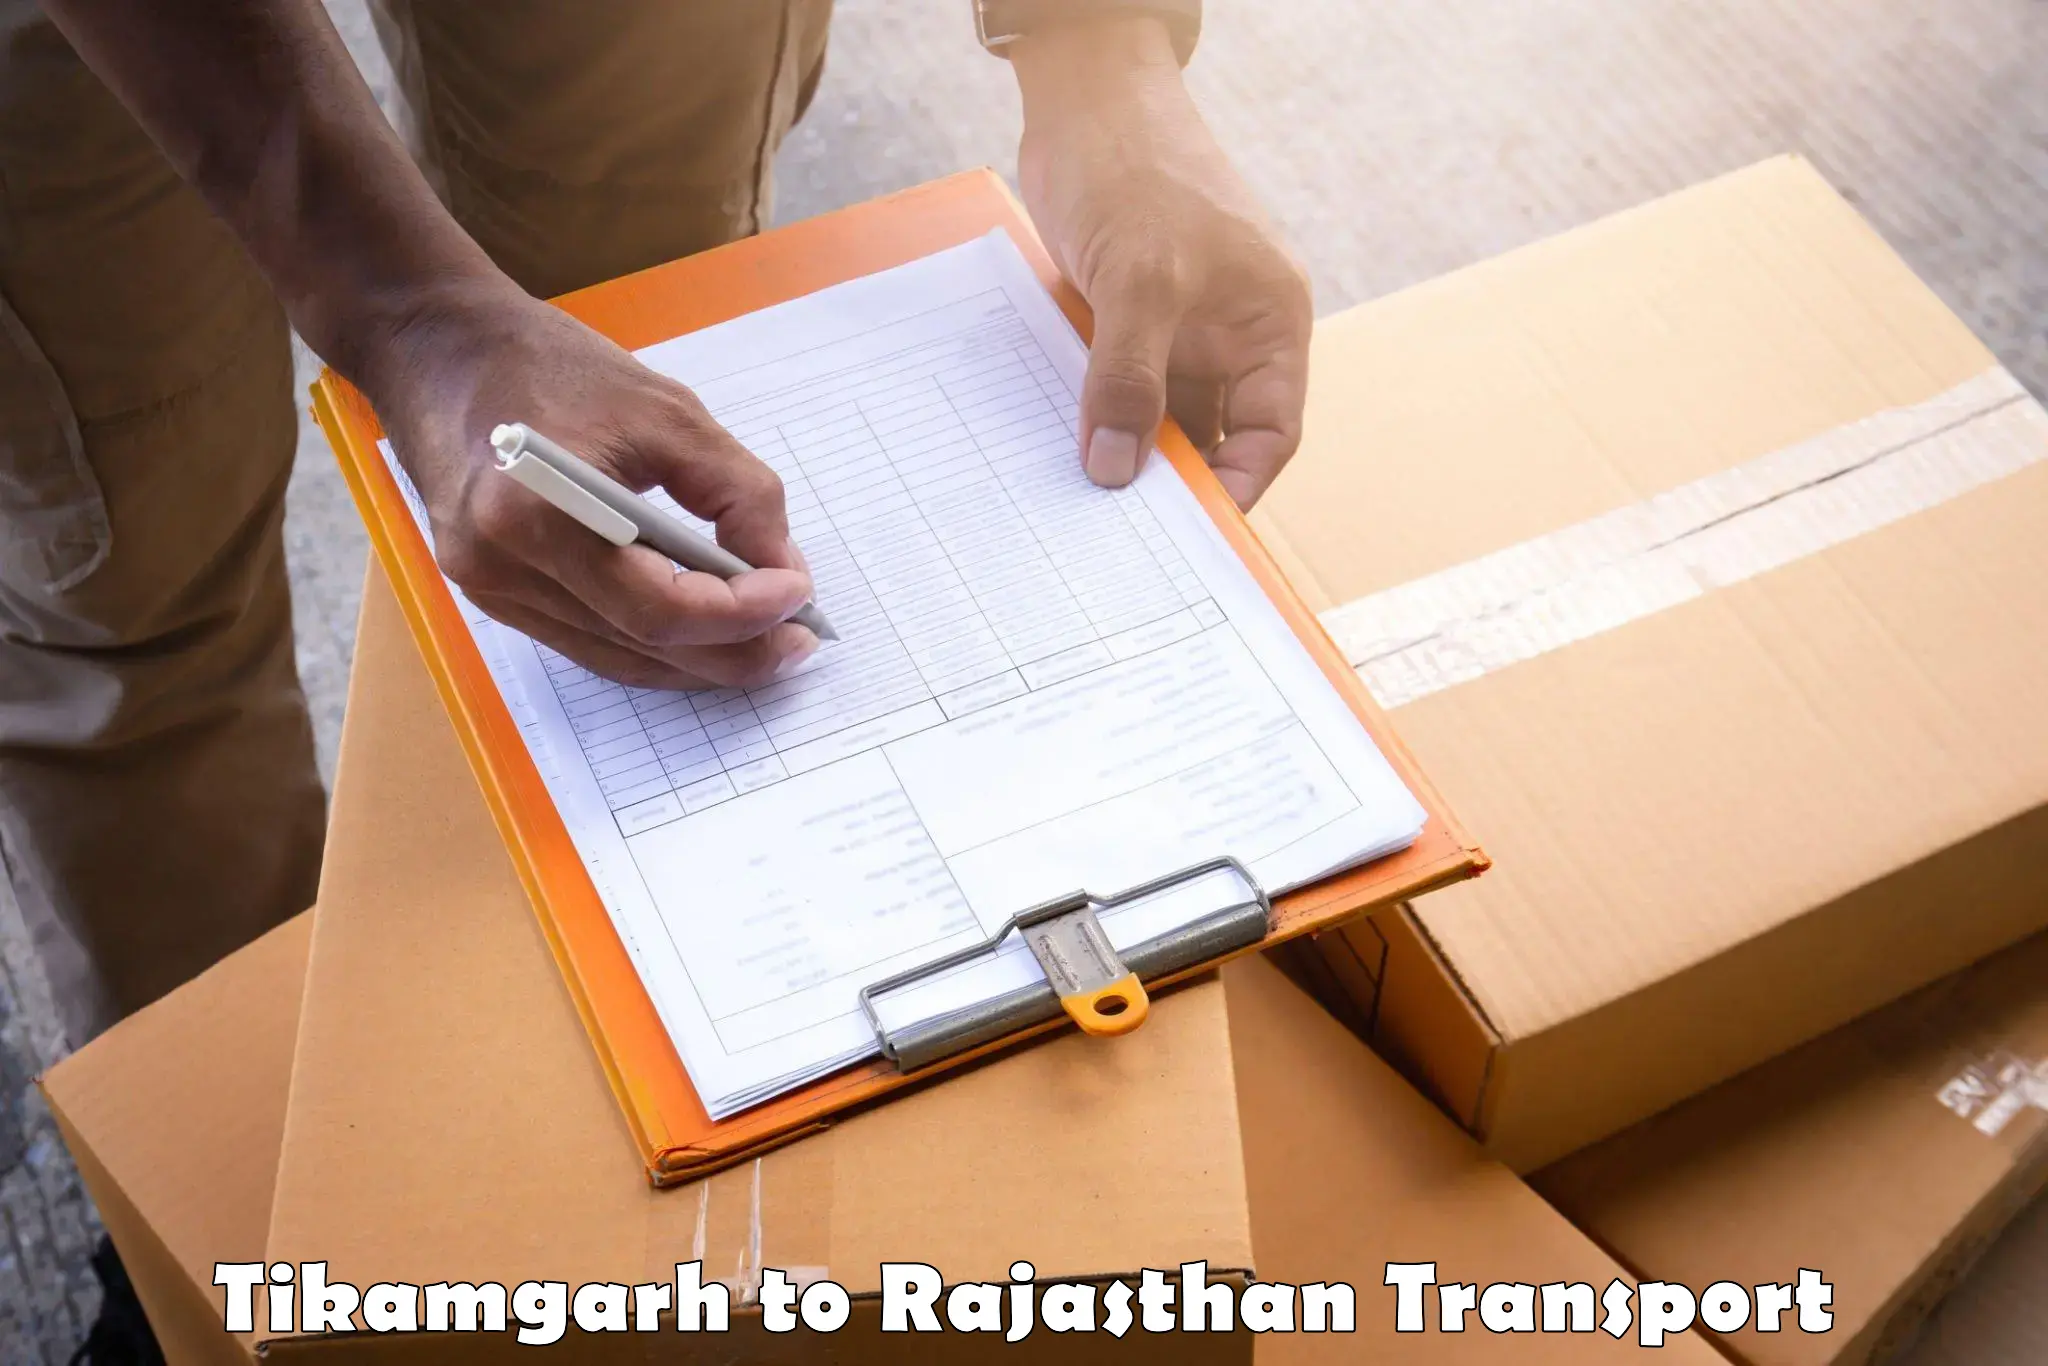 Furniture transport service Tikamgarh to Pratapgarh Rajasthan